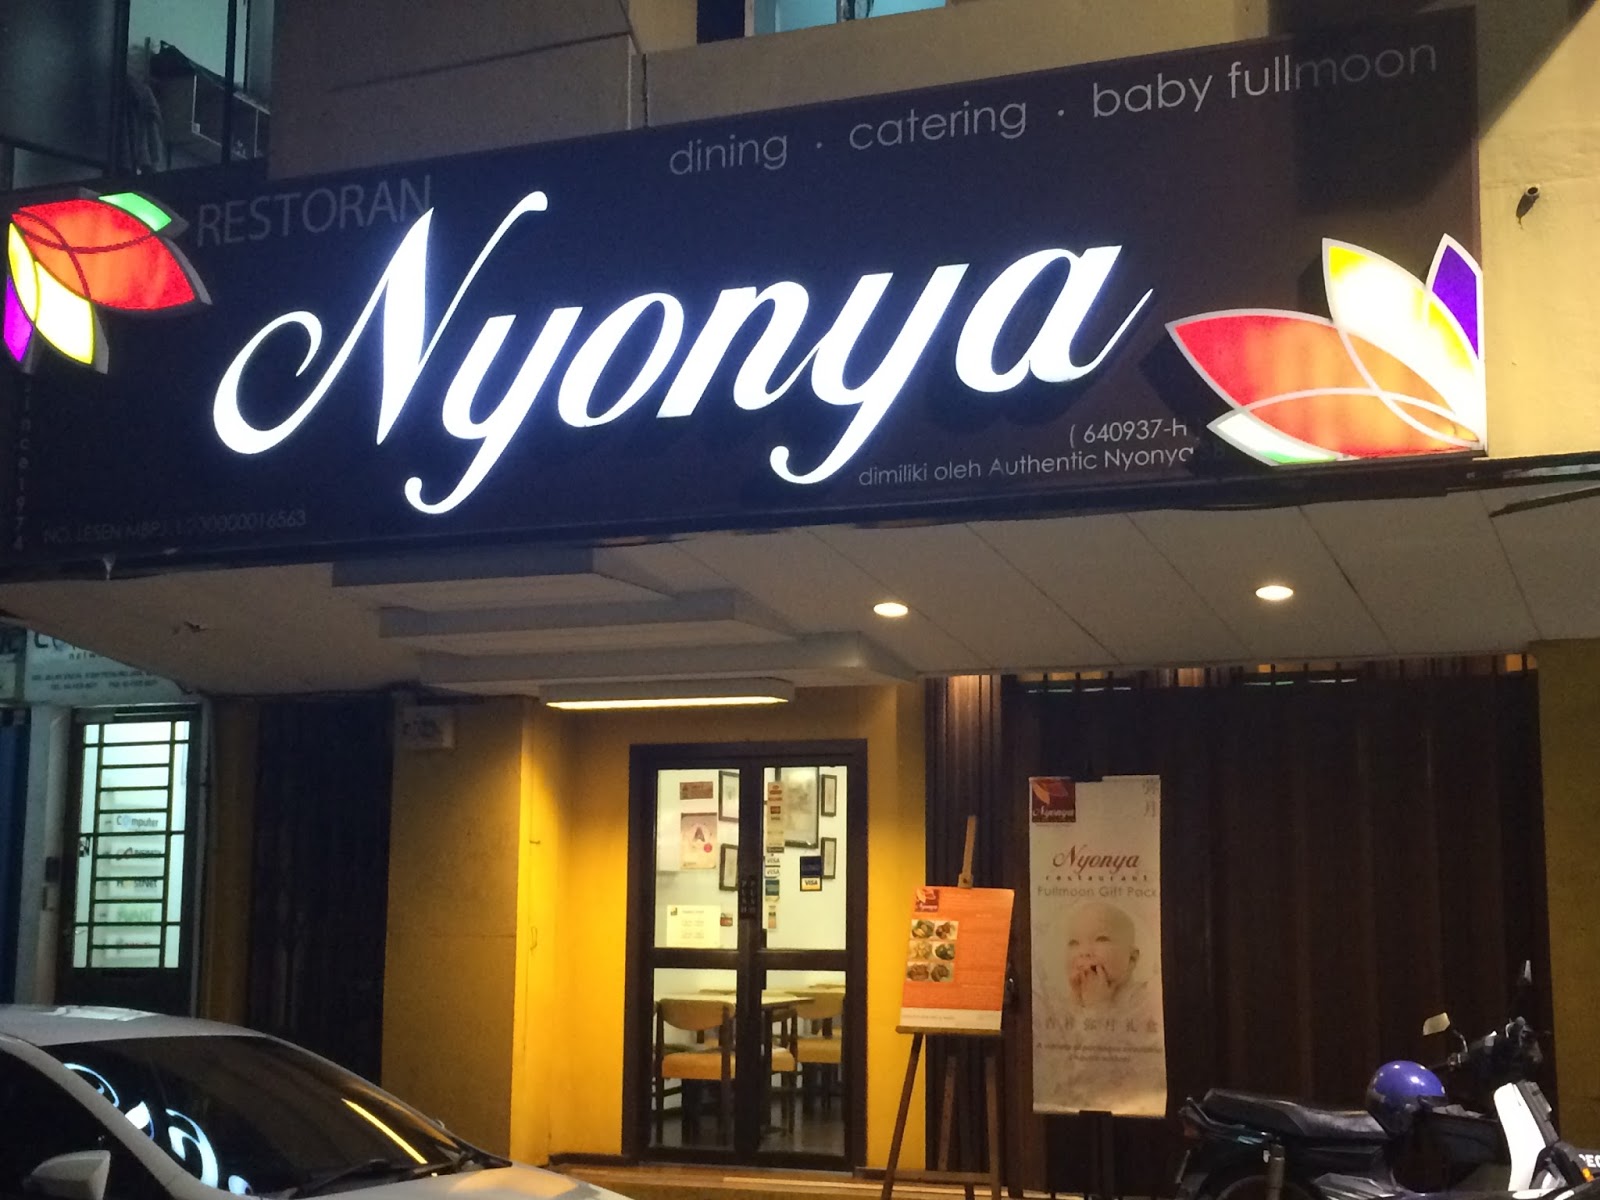 Ss2 nyonya restaurant Sri Nyonya